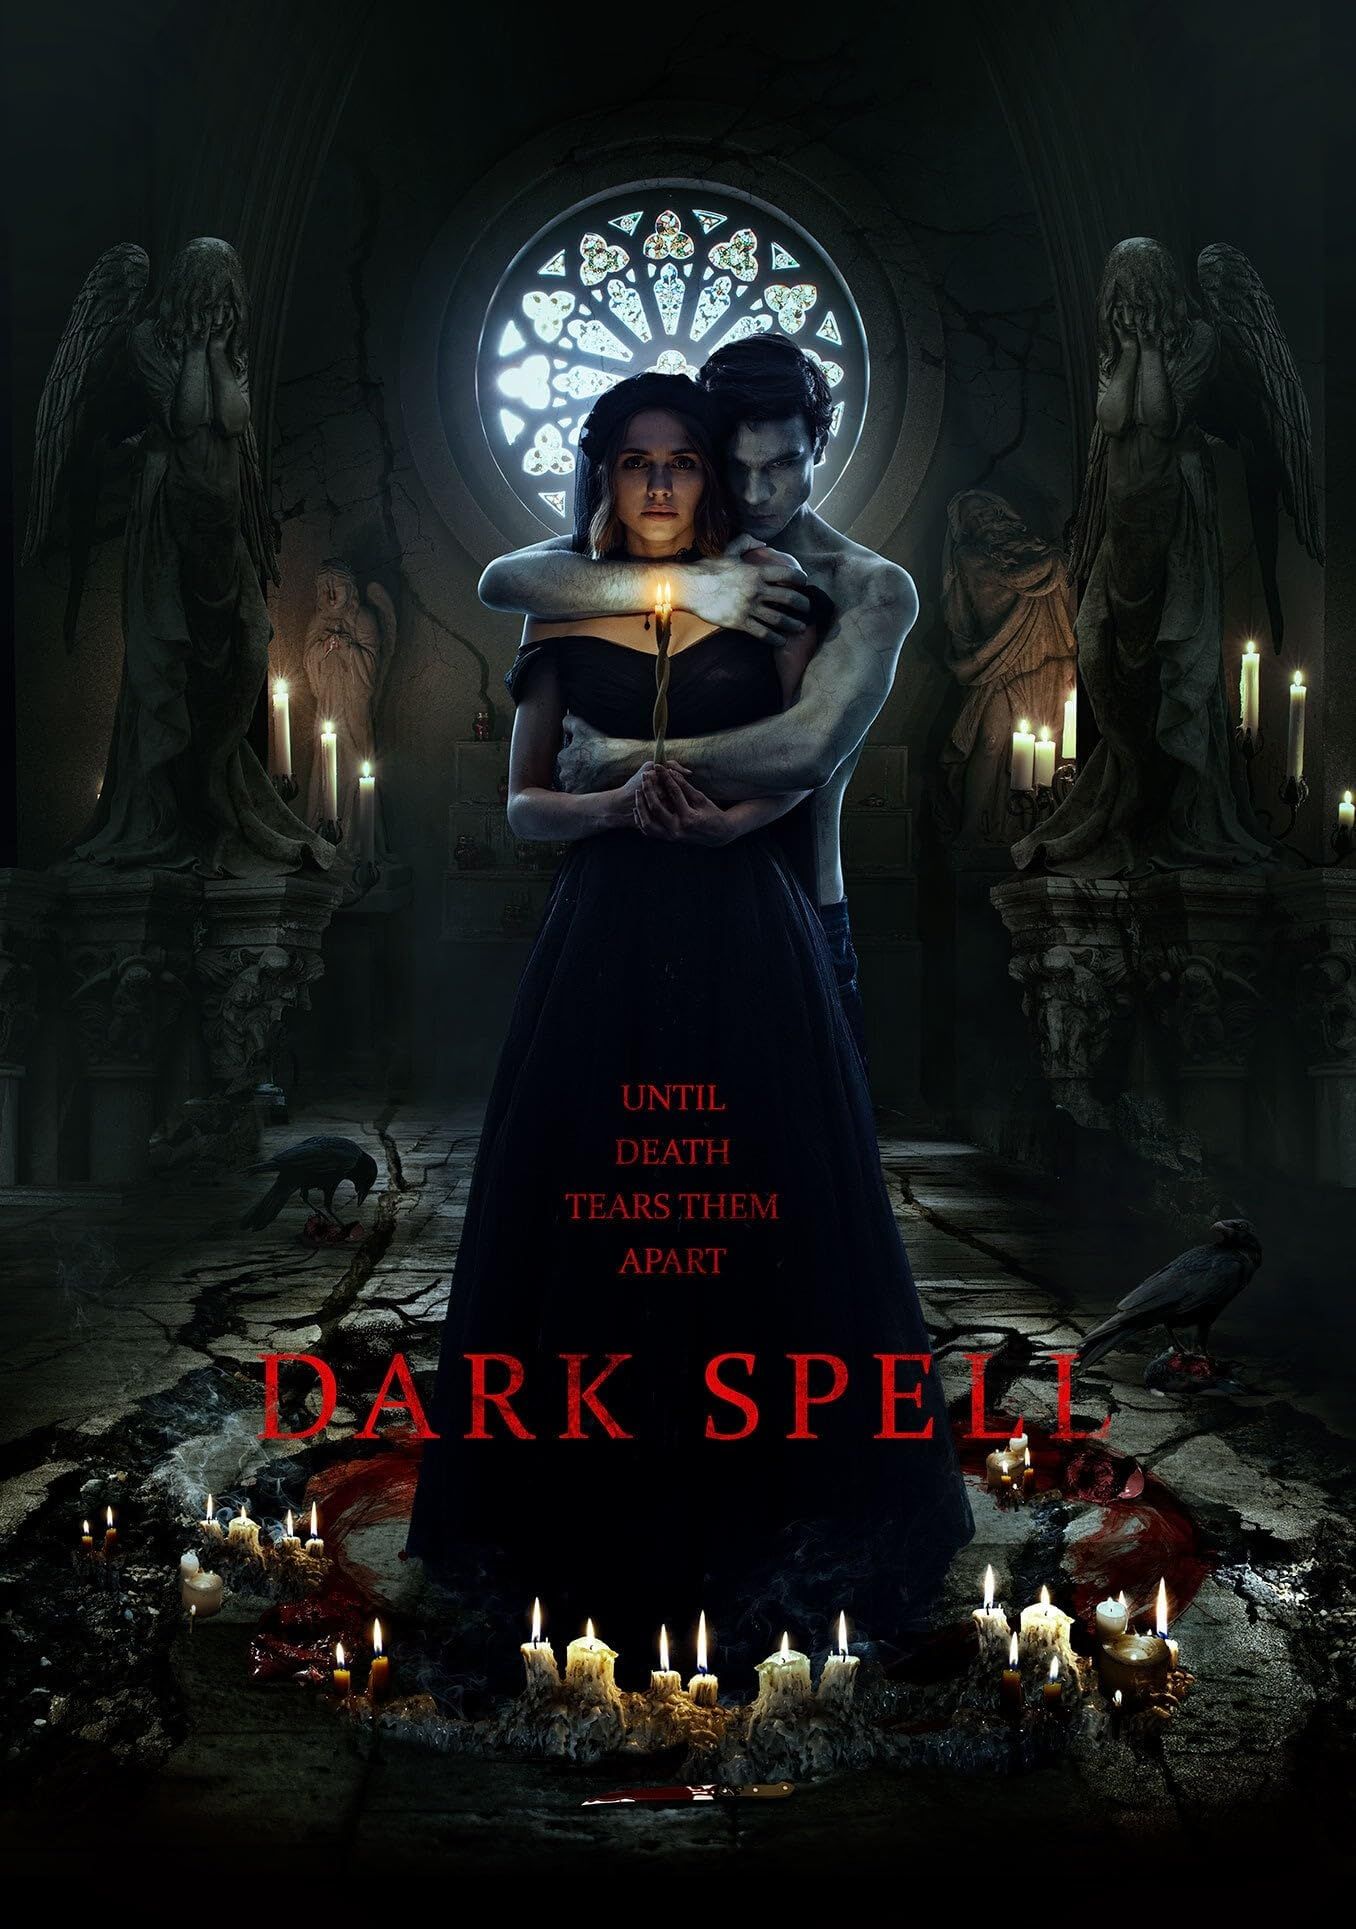 Dark Spell (2021) Hindi Dubbed ORG AMZN HDRip Full Movie 720p 480p